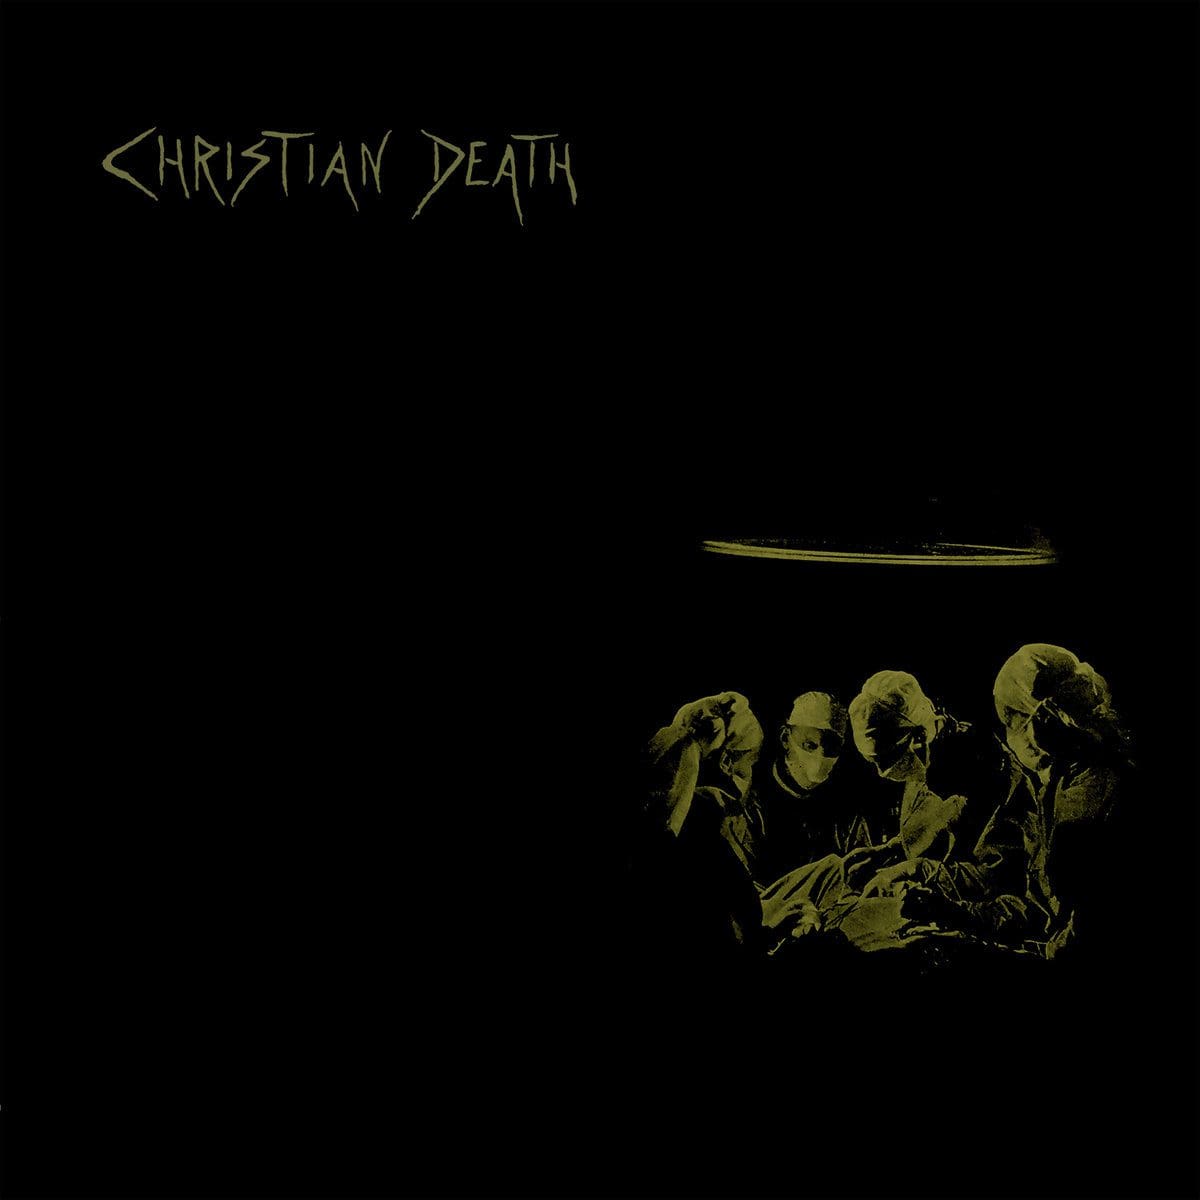 Reissue of Christian Death's 1986 album 'Atrocities'